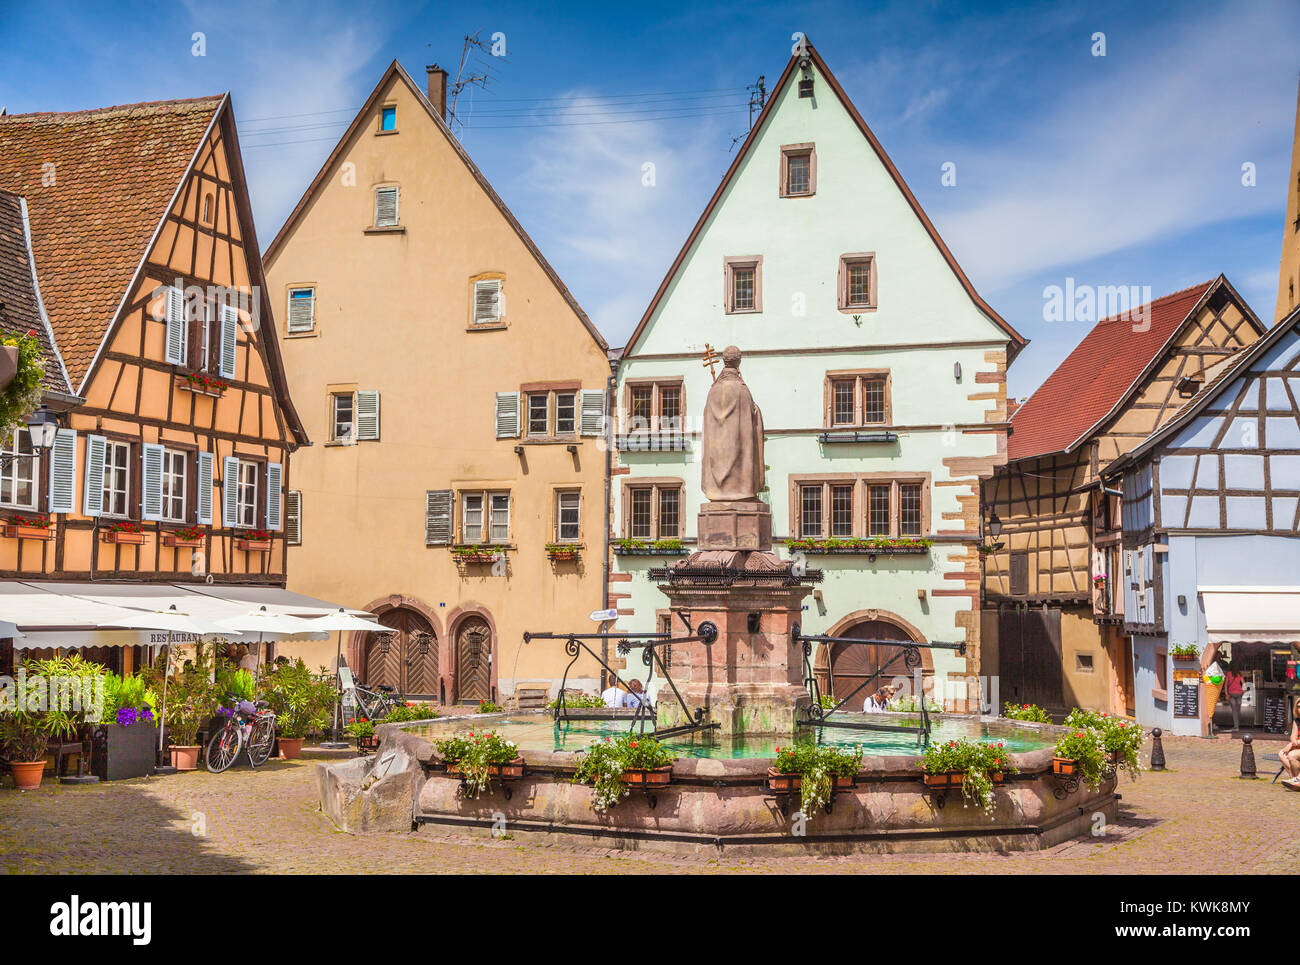 Place historique de la ville d'Eguisheim, une destination touristique populaire le long de la célèbre Route des Vins d'Alsace en été, Alsace, France Banque D'Images